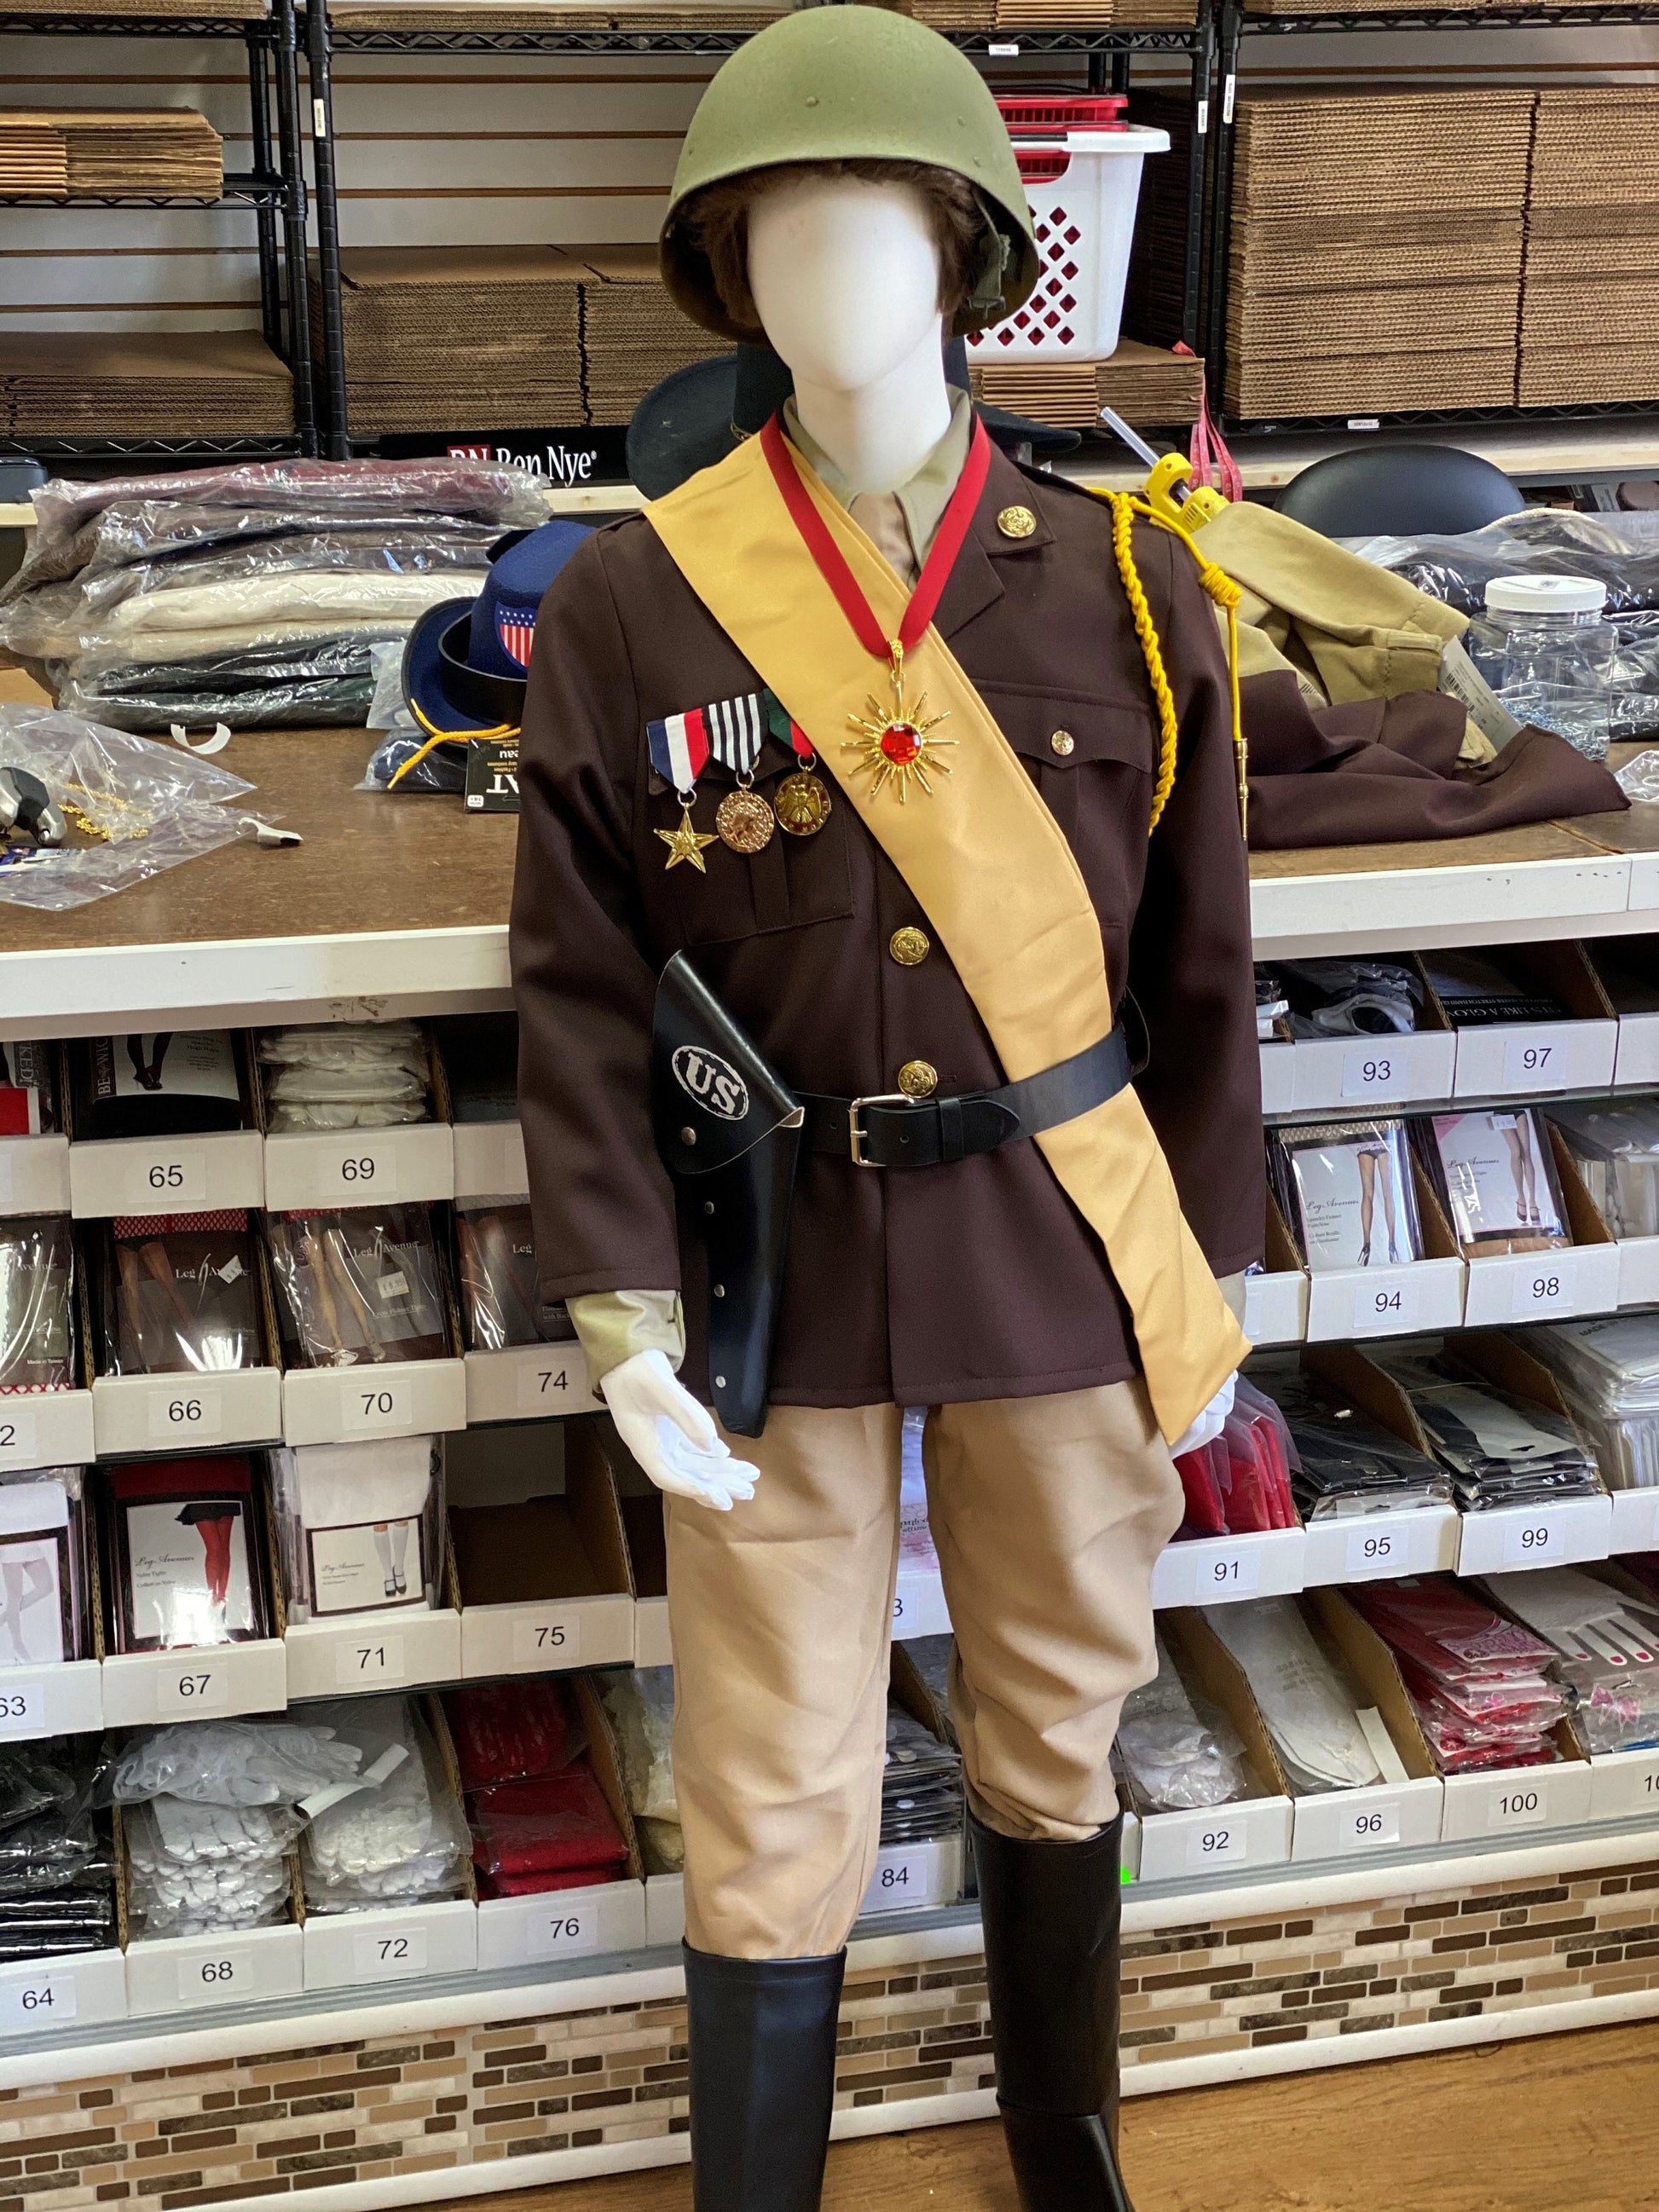 Children's George S. Patton Uniform/ WWII Generals Uniform